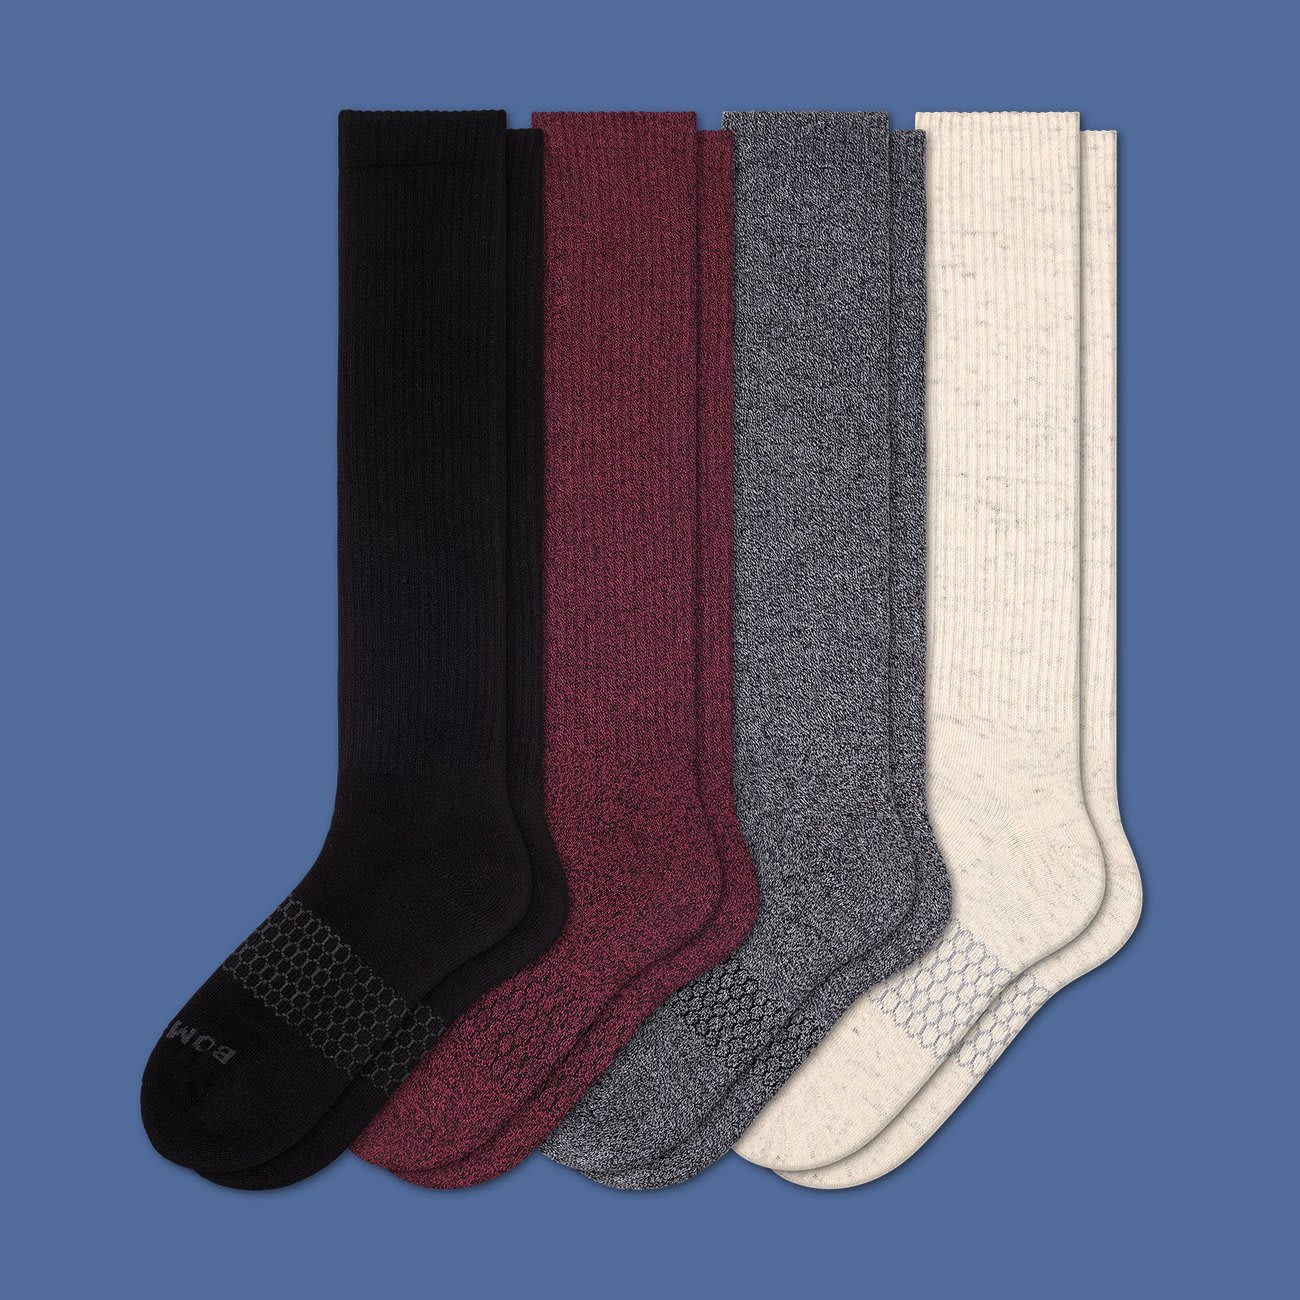 Knee Socks Inspired by Kiernan Shipka’s School Girl Style: Details